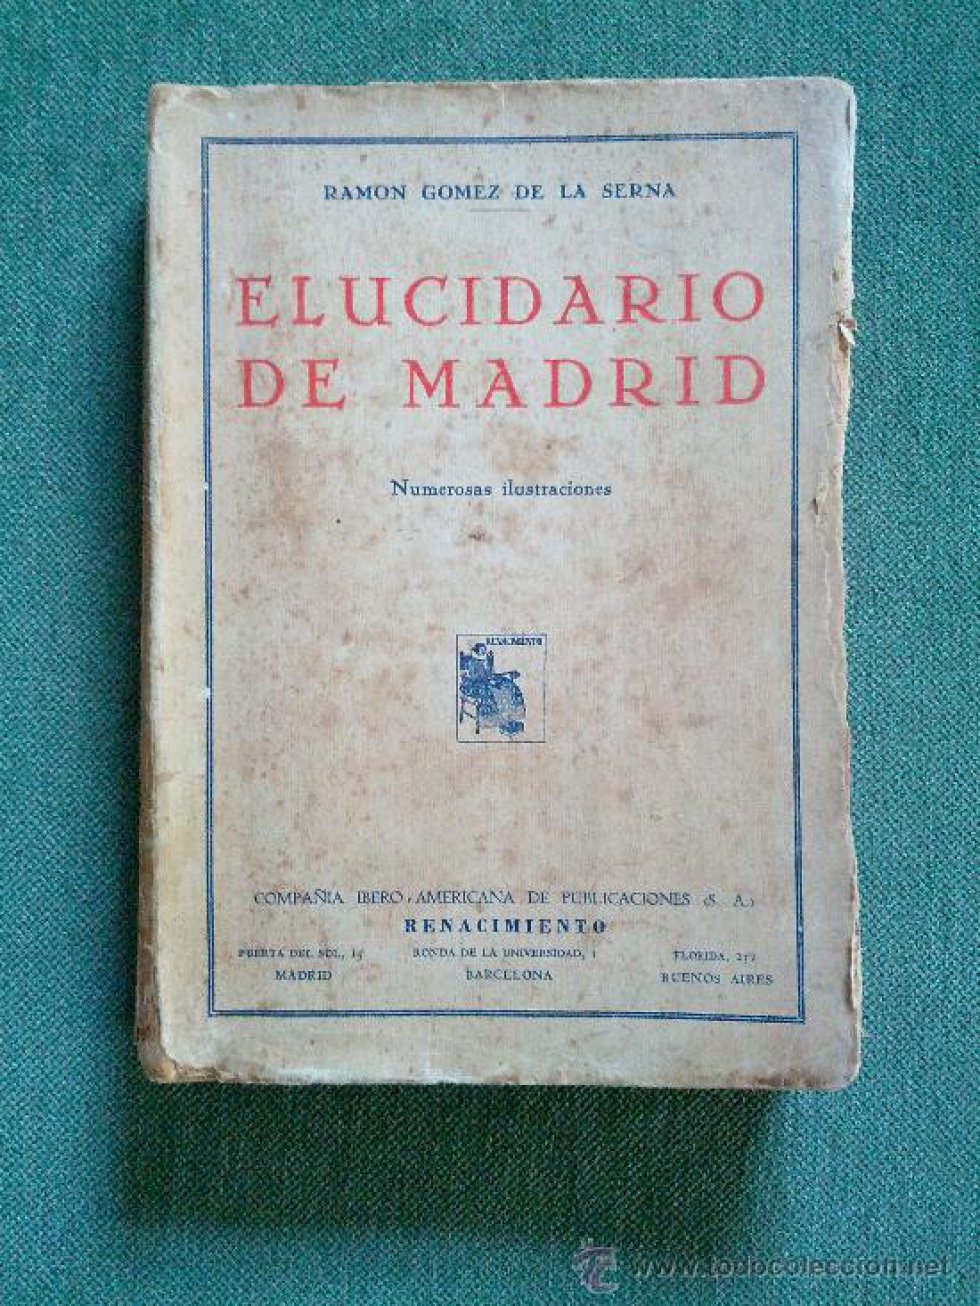 Ramón es el más fecundo inventor de Madrid. Se podía haber recomendado 'El Rastro' (1914) o 'Pombo' (1918), o la novela 'La Nardo' (1930), pero se ha preferido este completo “elucidario” (libro que esclarece asuntos oscuros, dice el DRAE), no exento de erudición, pero tampoco de capricho e inventiva, que quiere explicar por qué “Madrid es finura y postración, silencio y luz”, donde “todas las cosas tengan el regusto de sí mismas”.